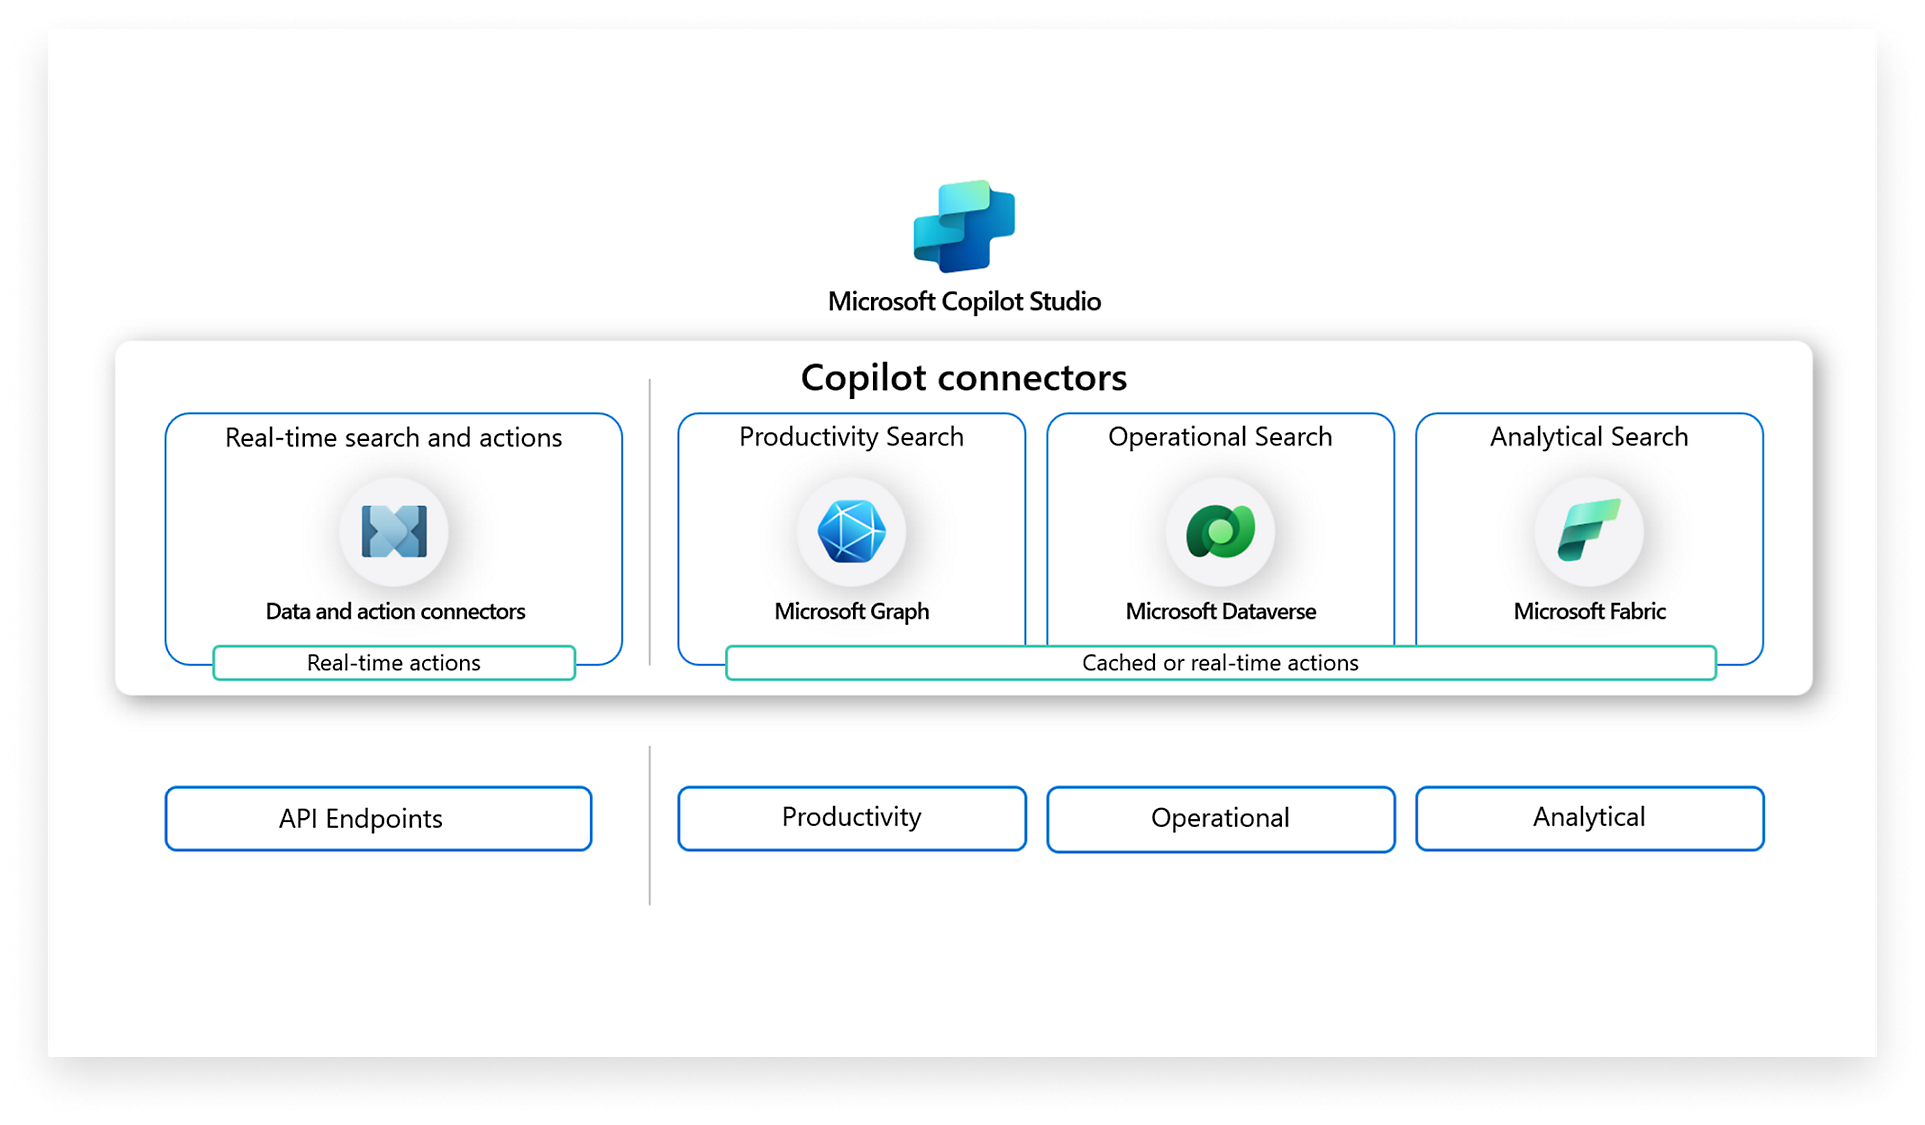 Microsoft Copilot Studio, connectors, søgedataconnectorer i realtid, produktivitet, drift, analysefunktioner